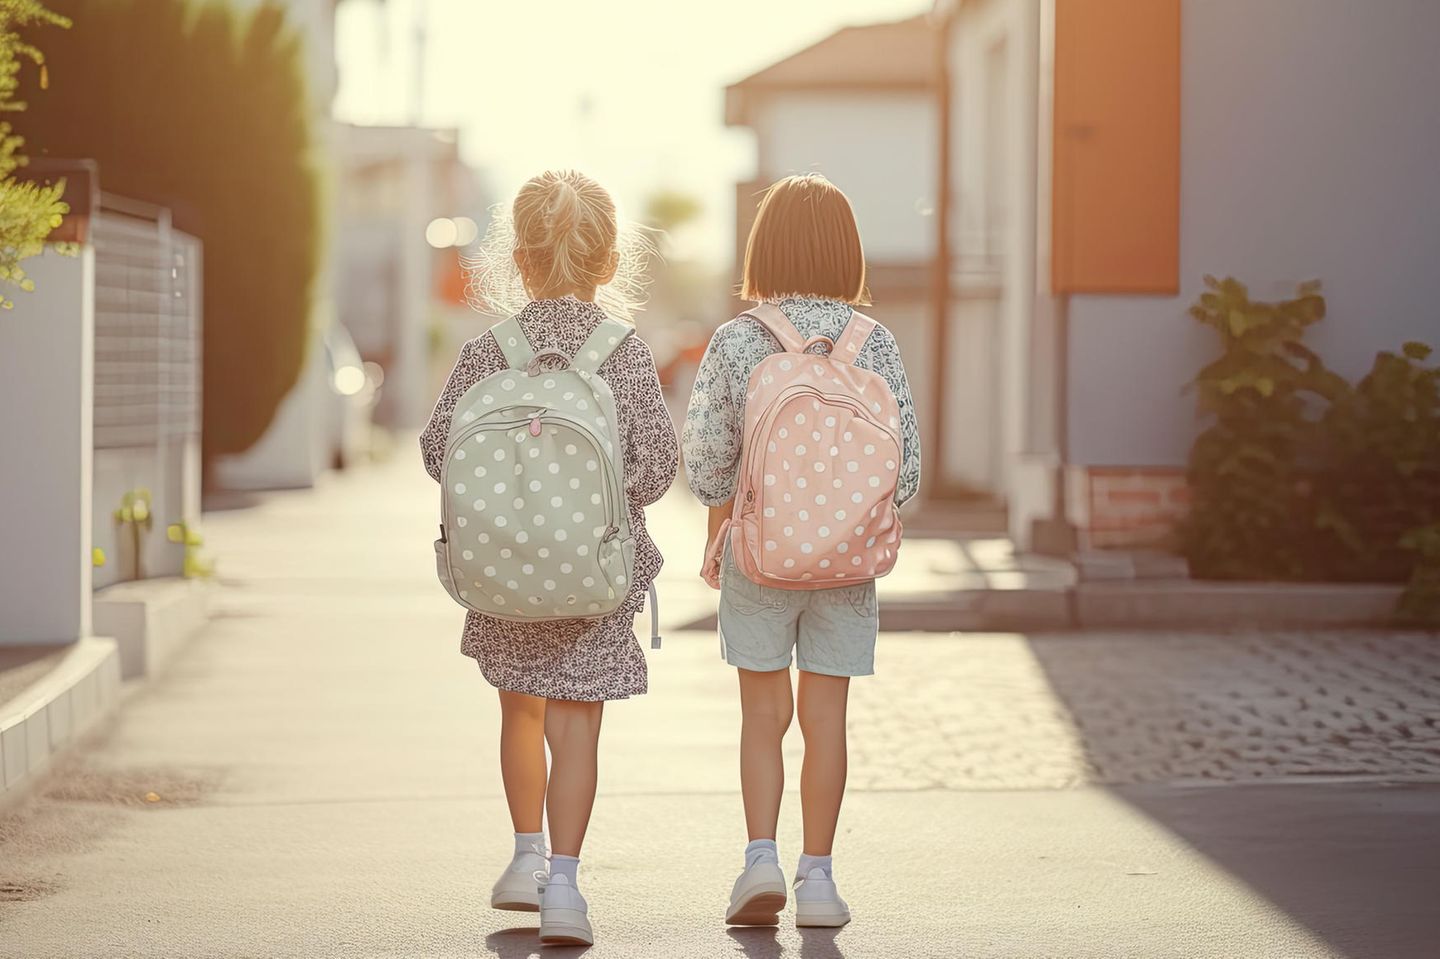 Vertrauen und Selbstständigkeit: Zwei Mädchen gehen zusammen zur Schule